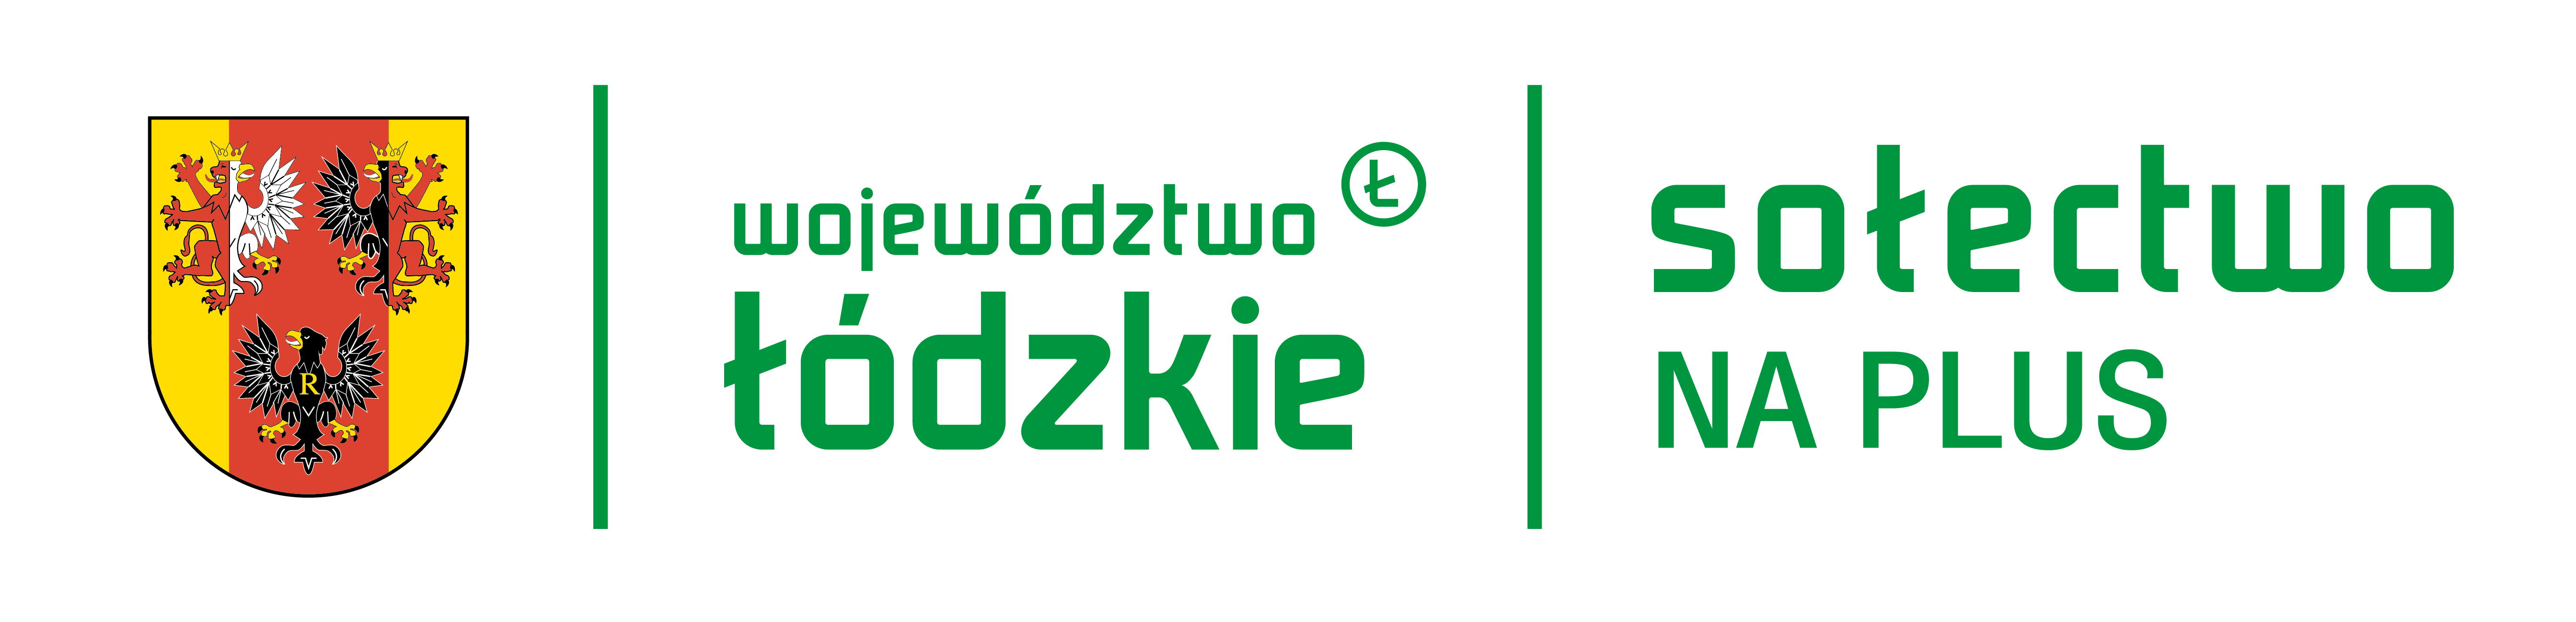 Logotyp Wojewódzwto łódzkie Sołectwo na Plus